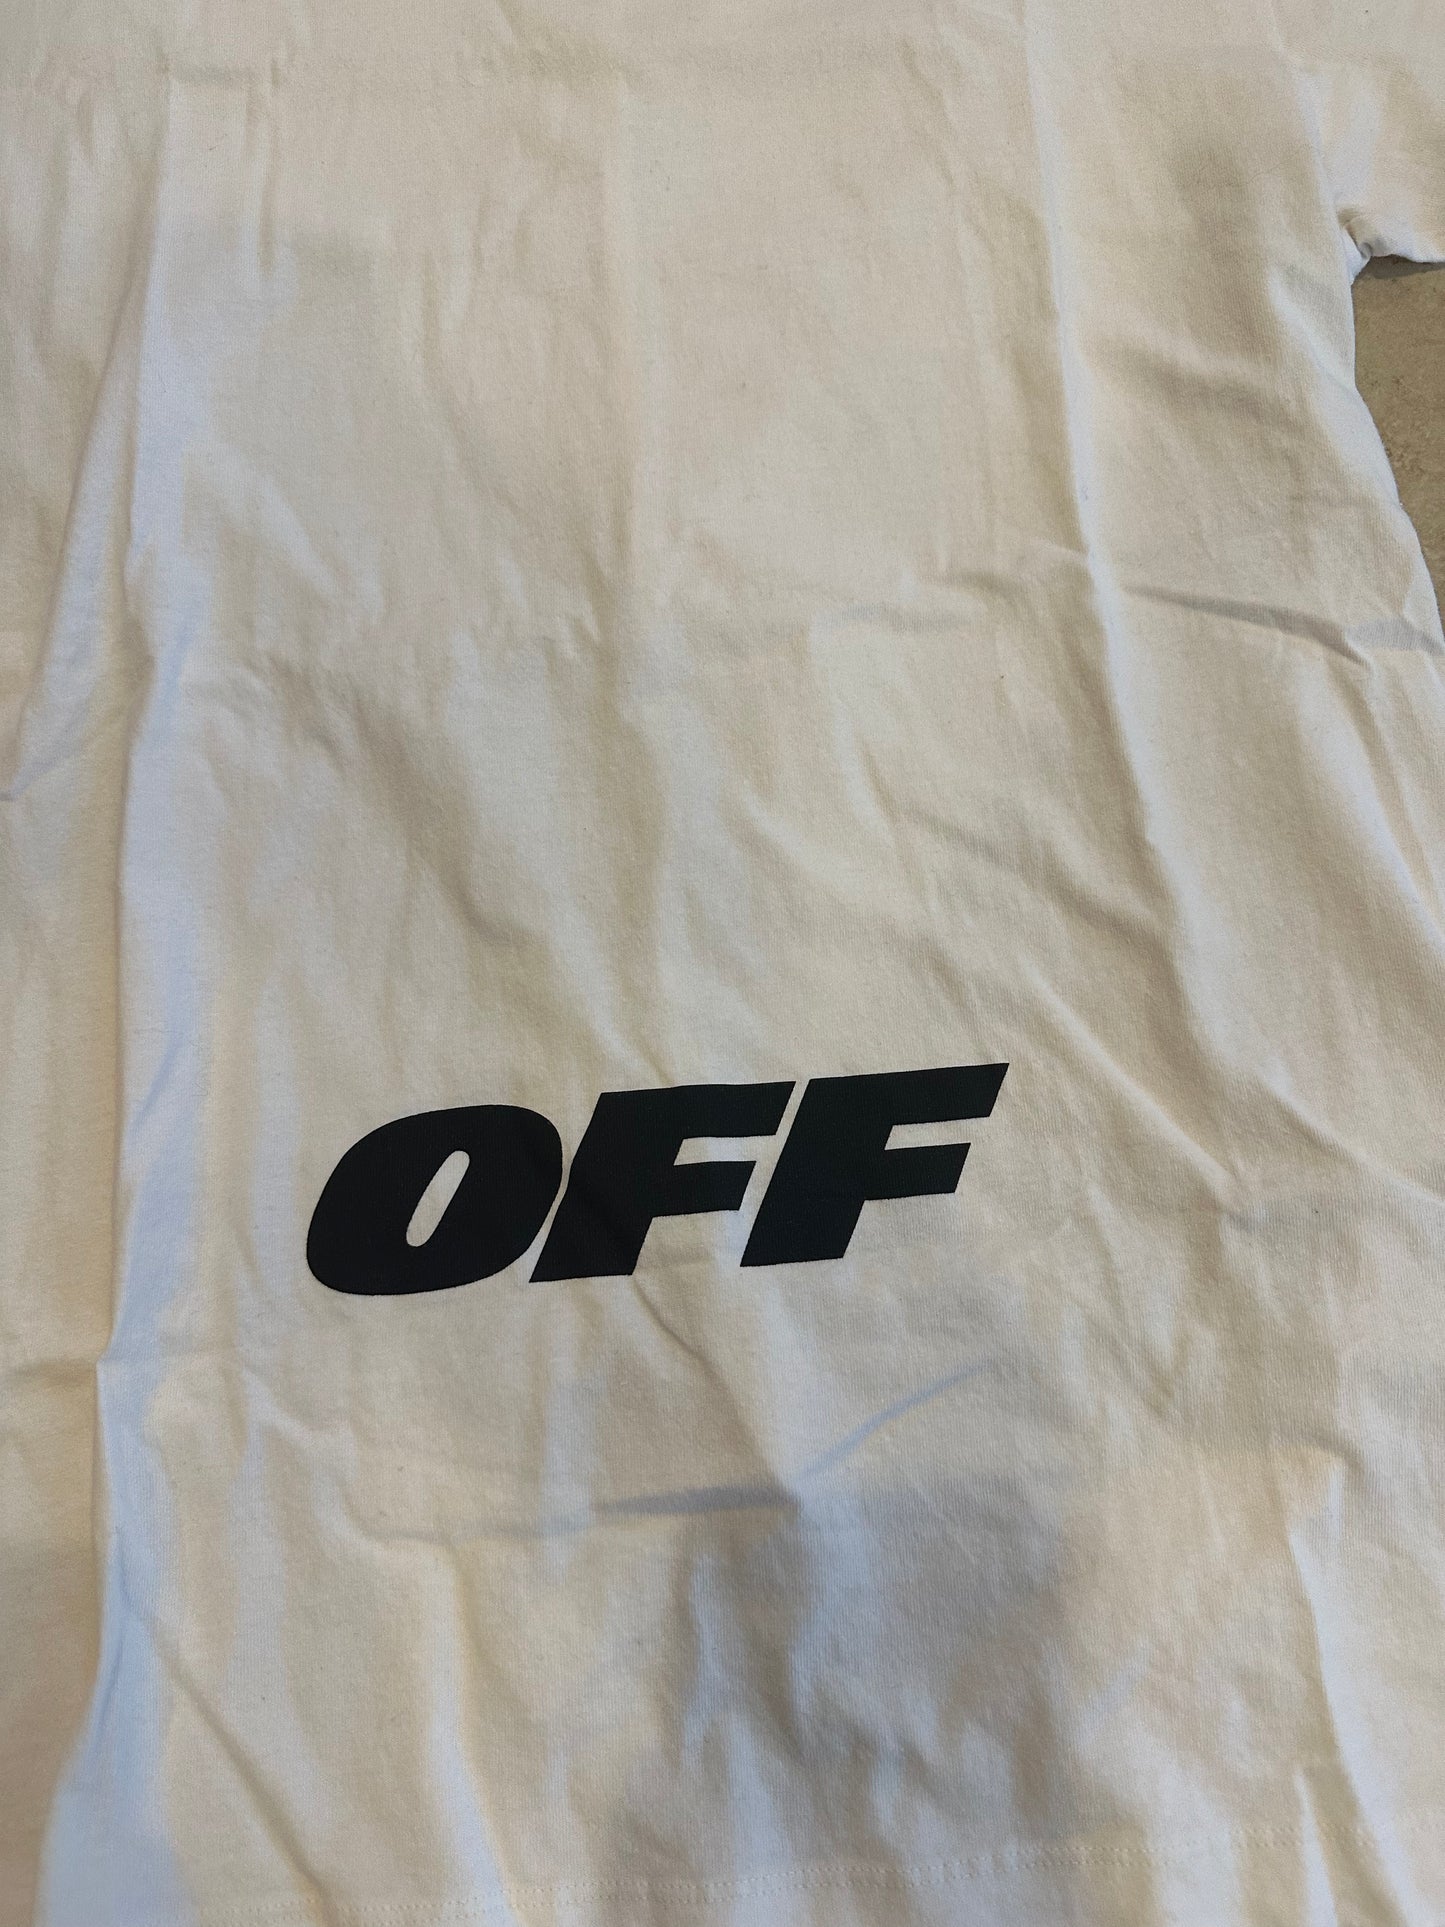 Off-White “OFF” logo Tee